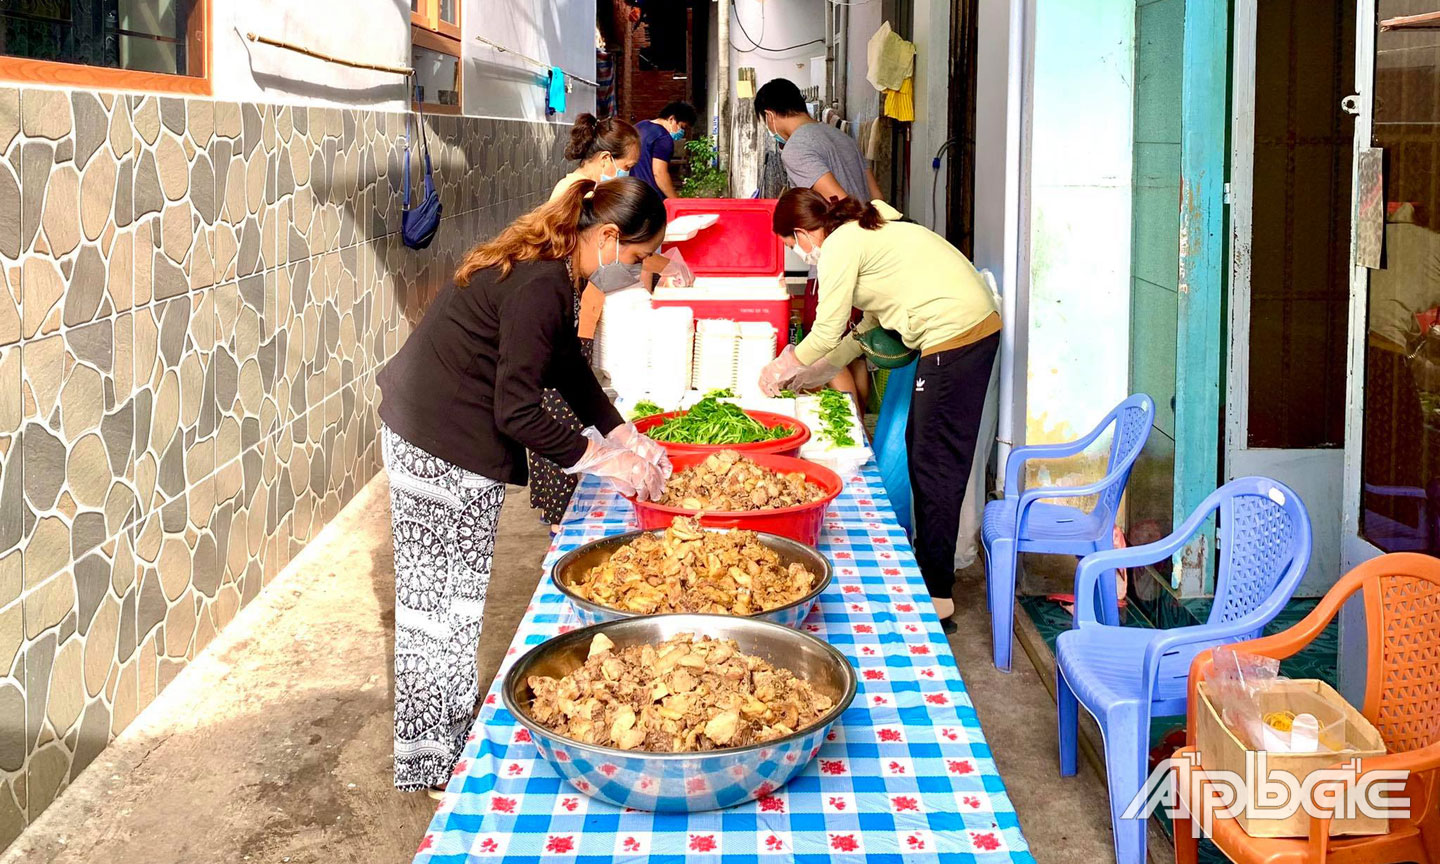 “Nhà ăn 0 đồng” của Nhóm thiện nguyện Nhựt Tâm Lê chuẩn bị các phần ăn miễn phí cho người dân có hoàn cảnh khó khăn.